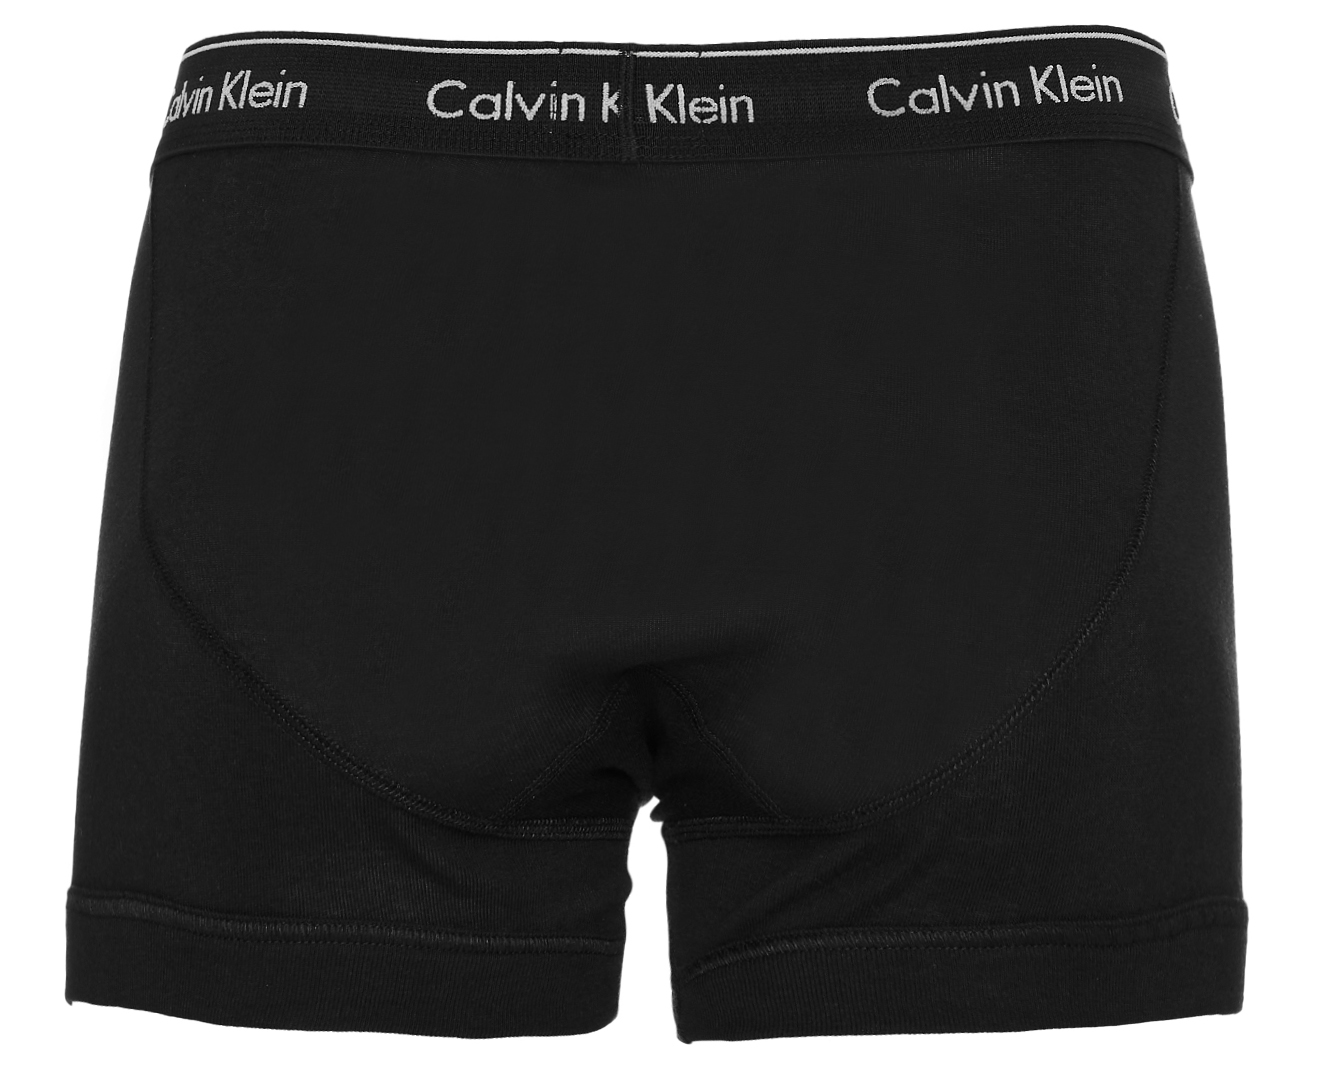 Calvin Klein Men's Cotton Classic Trunks 3-Pack - Black | Catch.com.au